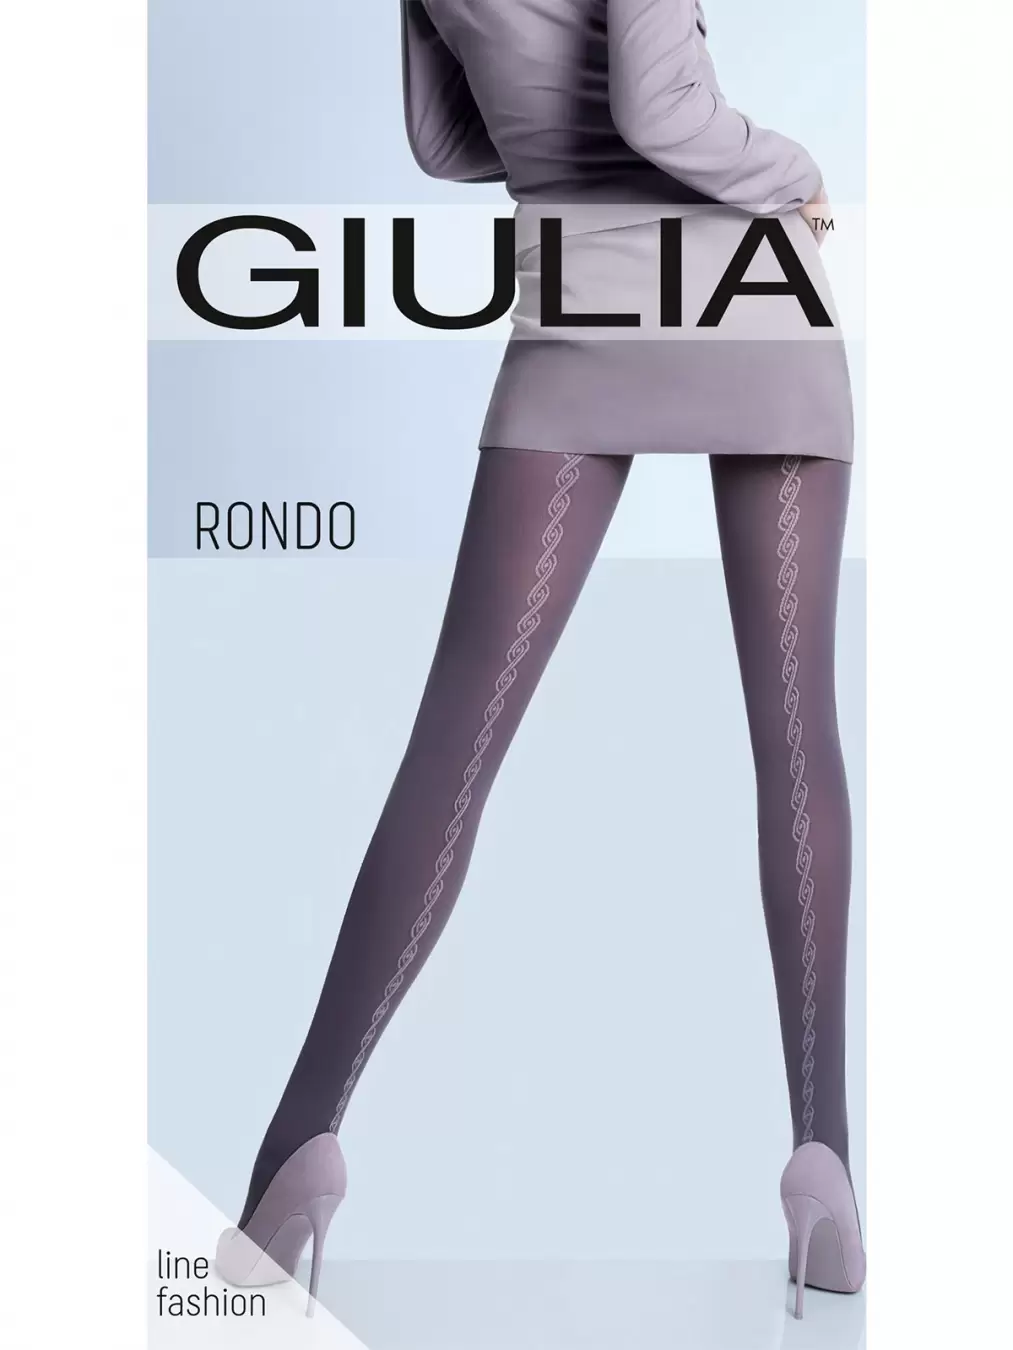 Giulia RONDO 05, фантазийные колготки (изображение 1)